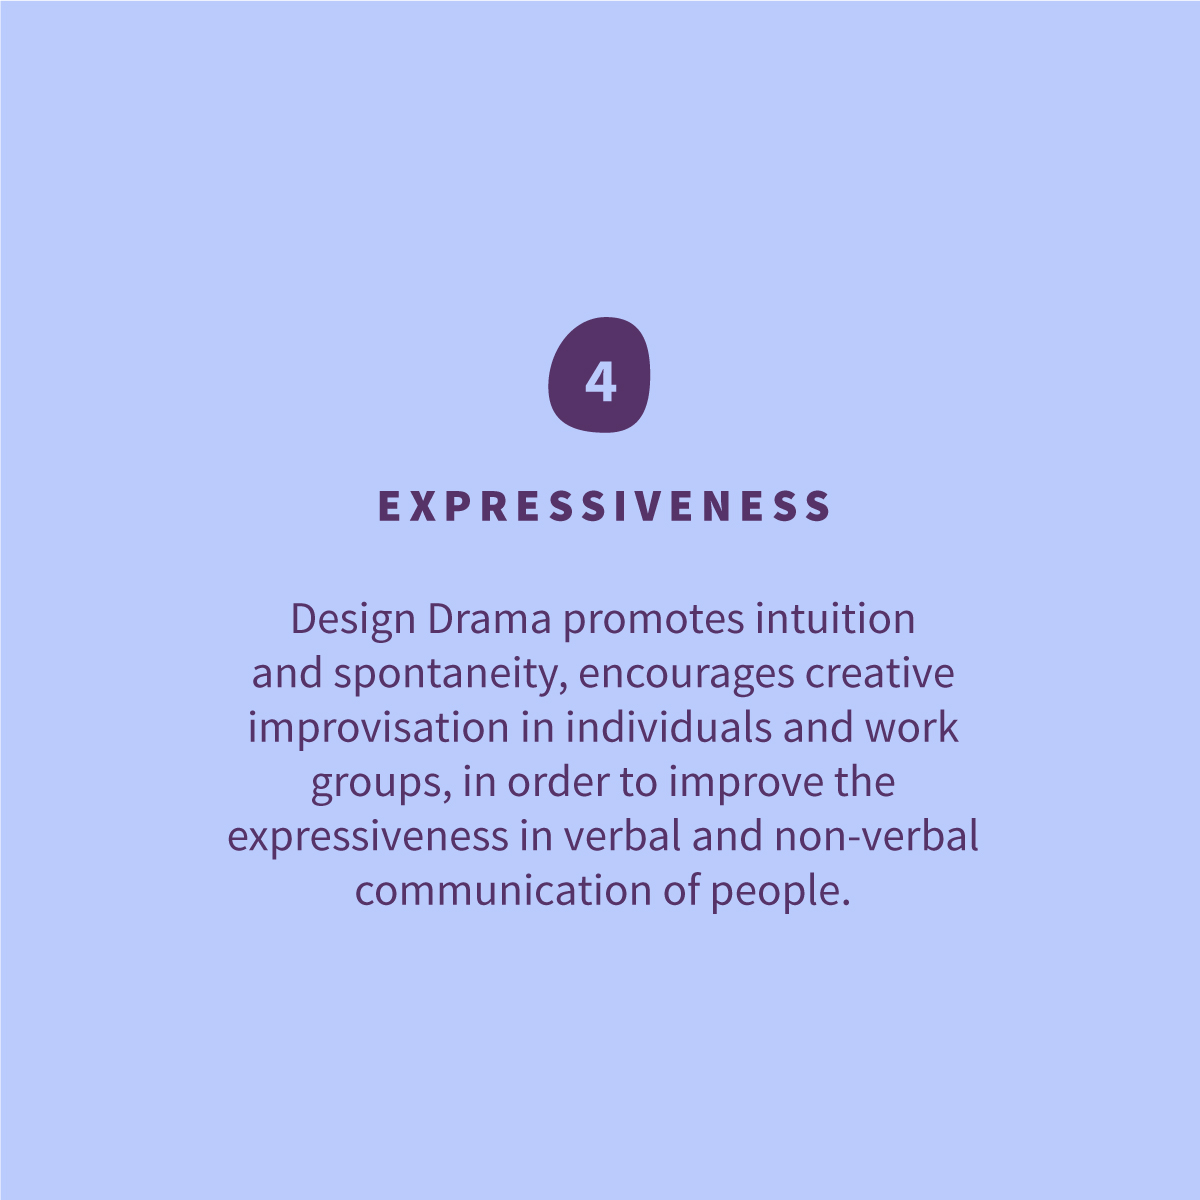 
<p>Design Drama promueve la intuición y espontaneidad, fomenta la improvisación creativa en los individuo y los grupos de trabajo, para mejorar la expresividad en la comunicación verbal y no verbal de las personas.</p>
